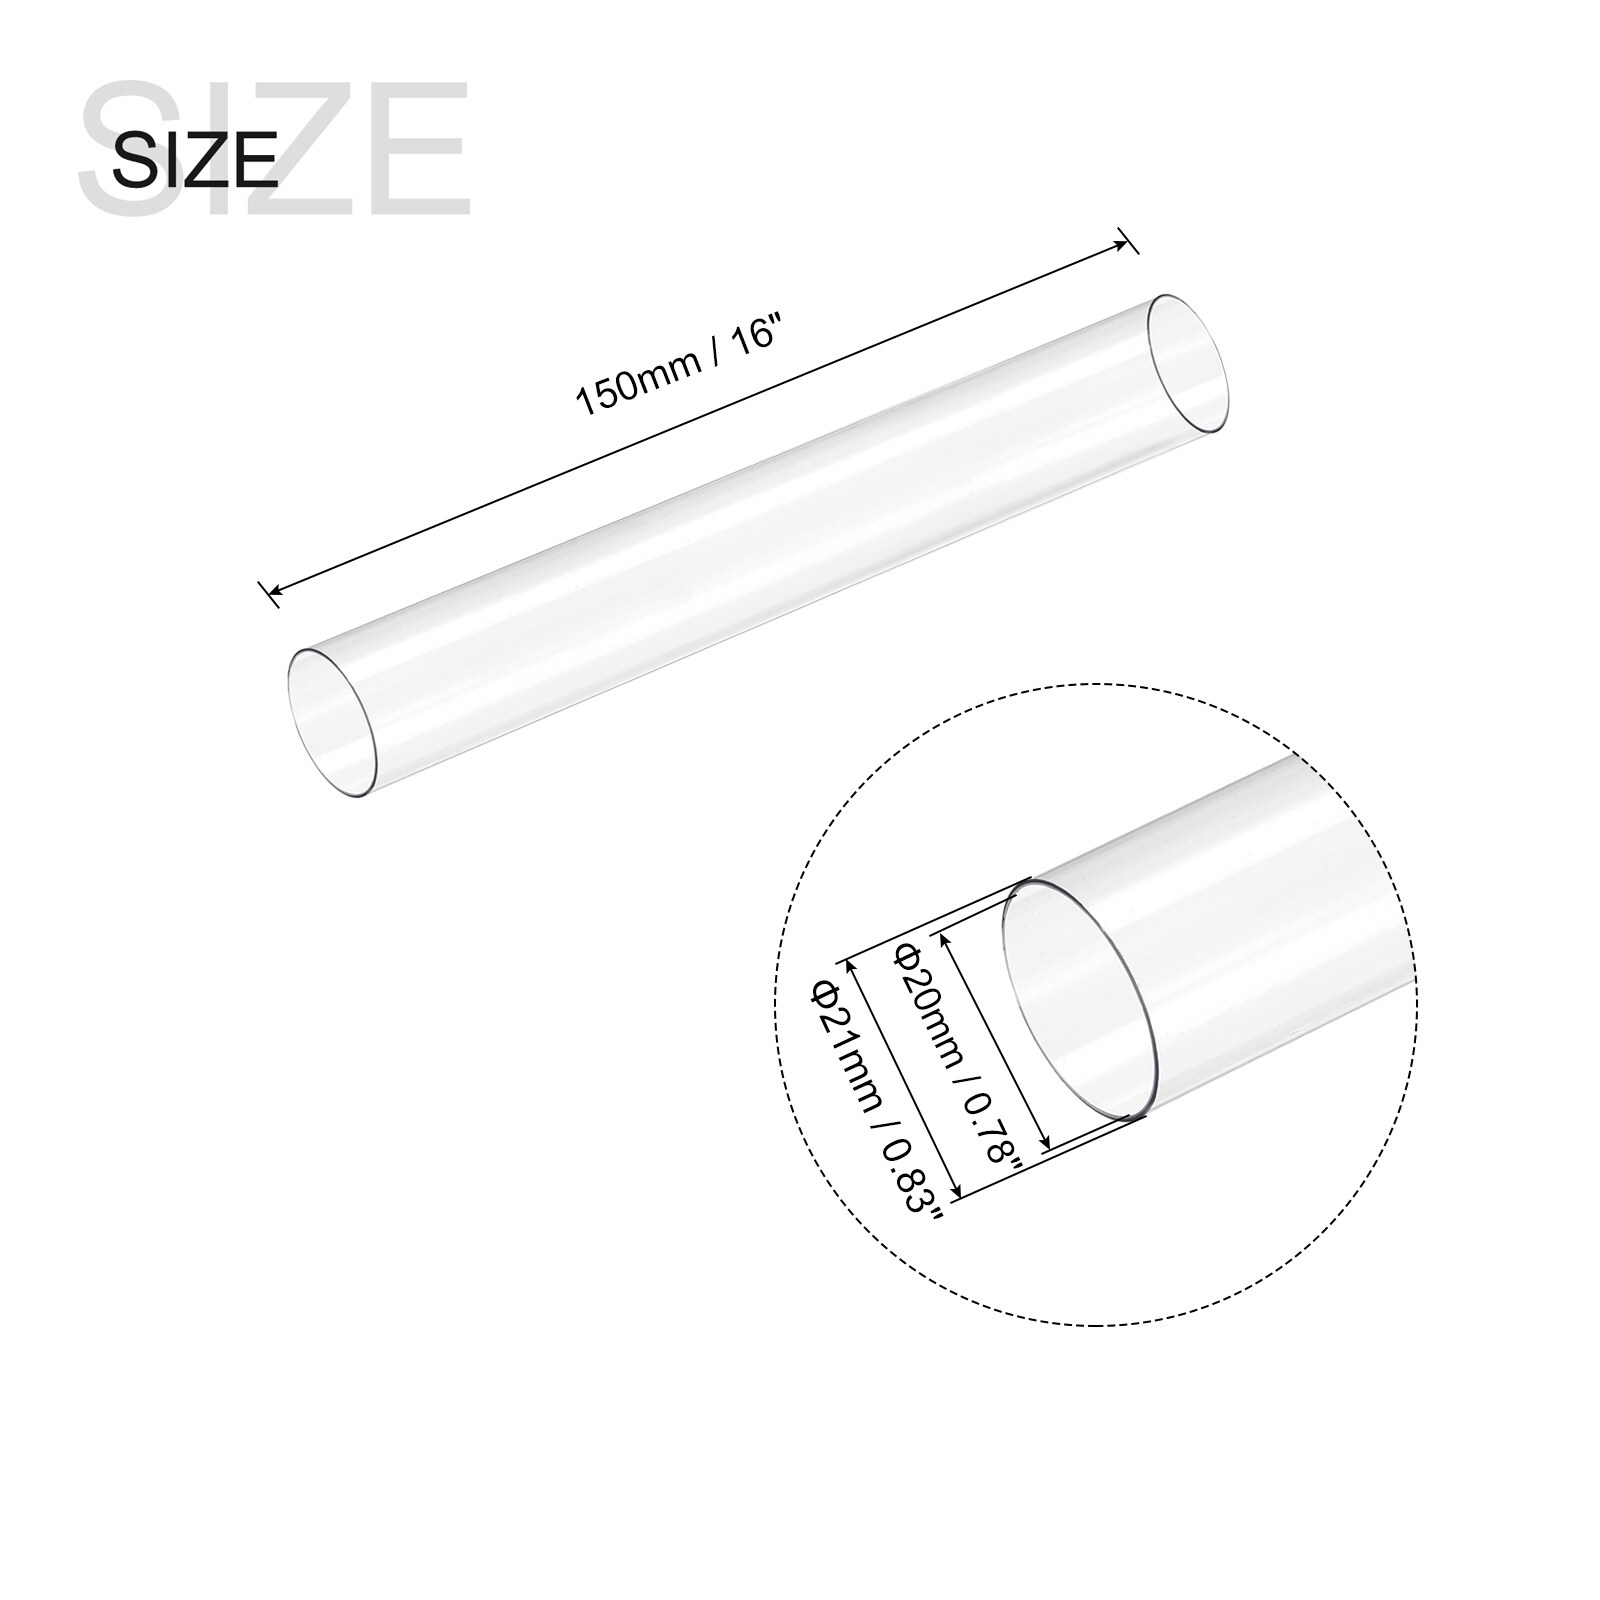 Plastic Pipe Rigid Tube Clear 0.78(20mm) ID 0.83(21mm) OD 6 (150mm)